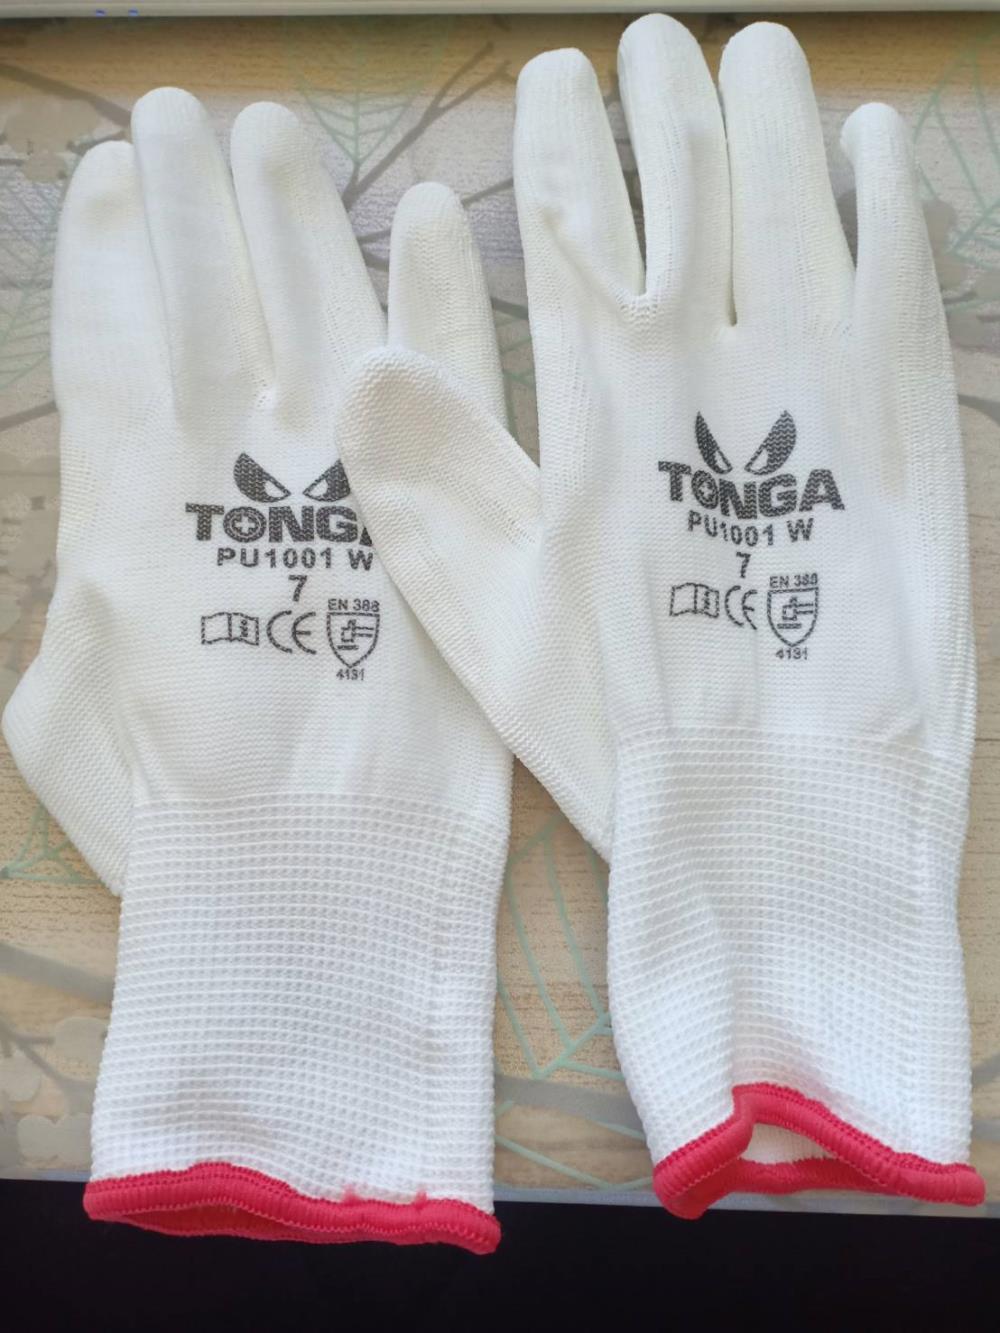 ถุงมือไนล่อนเคลือบ พียู สีขาว ,ถุงมือไนล่อนเคลือบ พียู ,TONGA,Plant and Facility Equipment/Safety Equipment/Gloves & Hand Protection